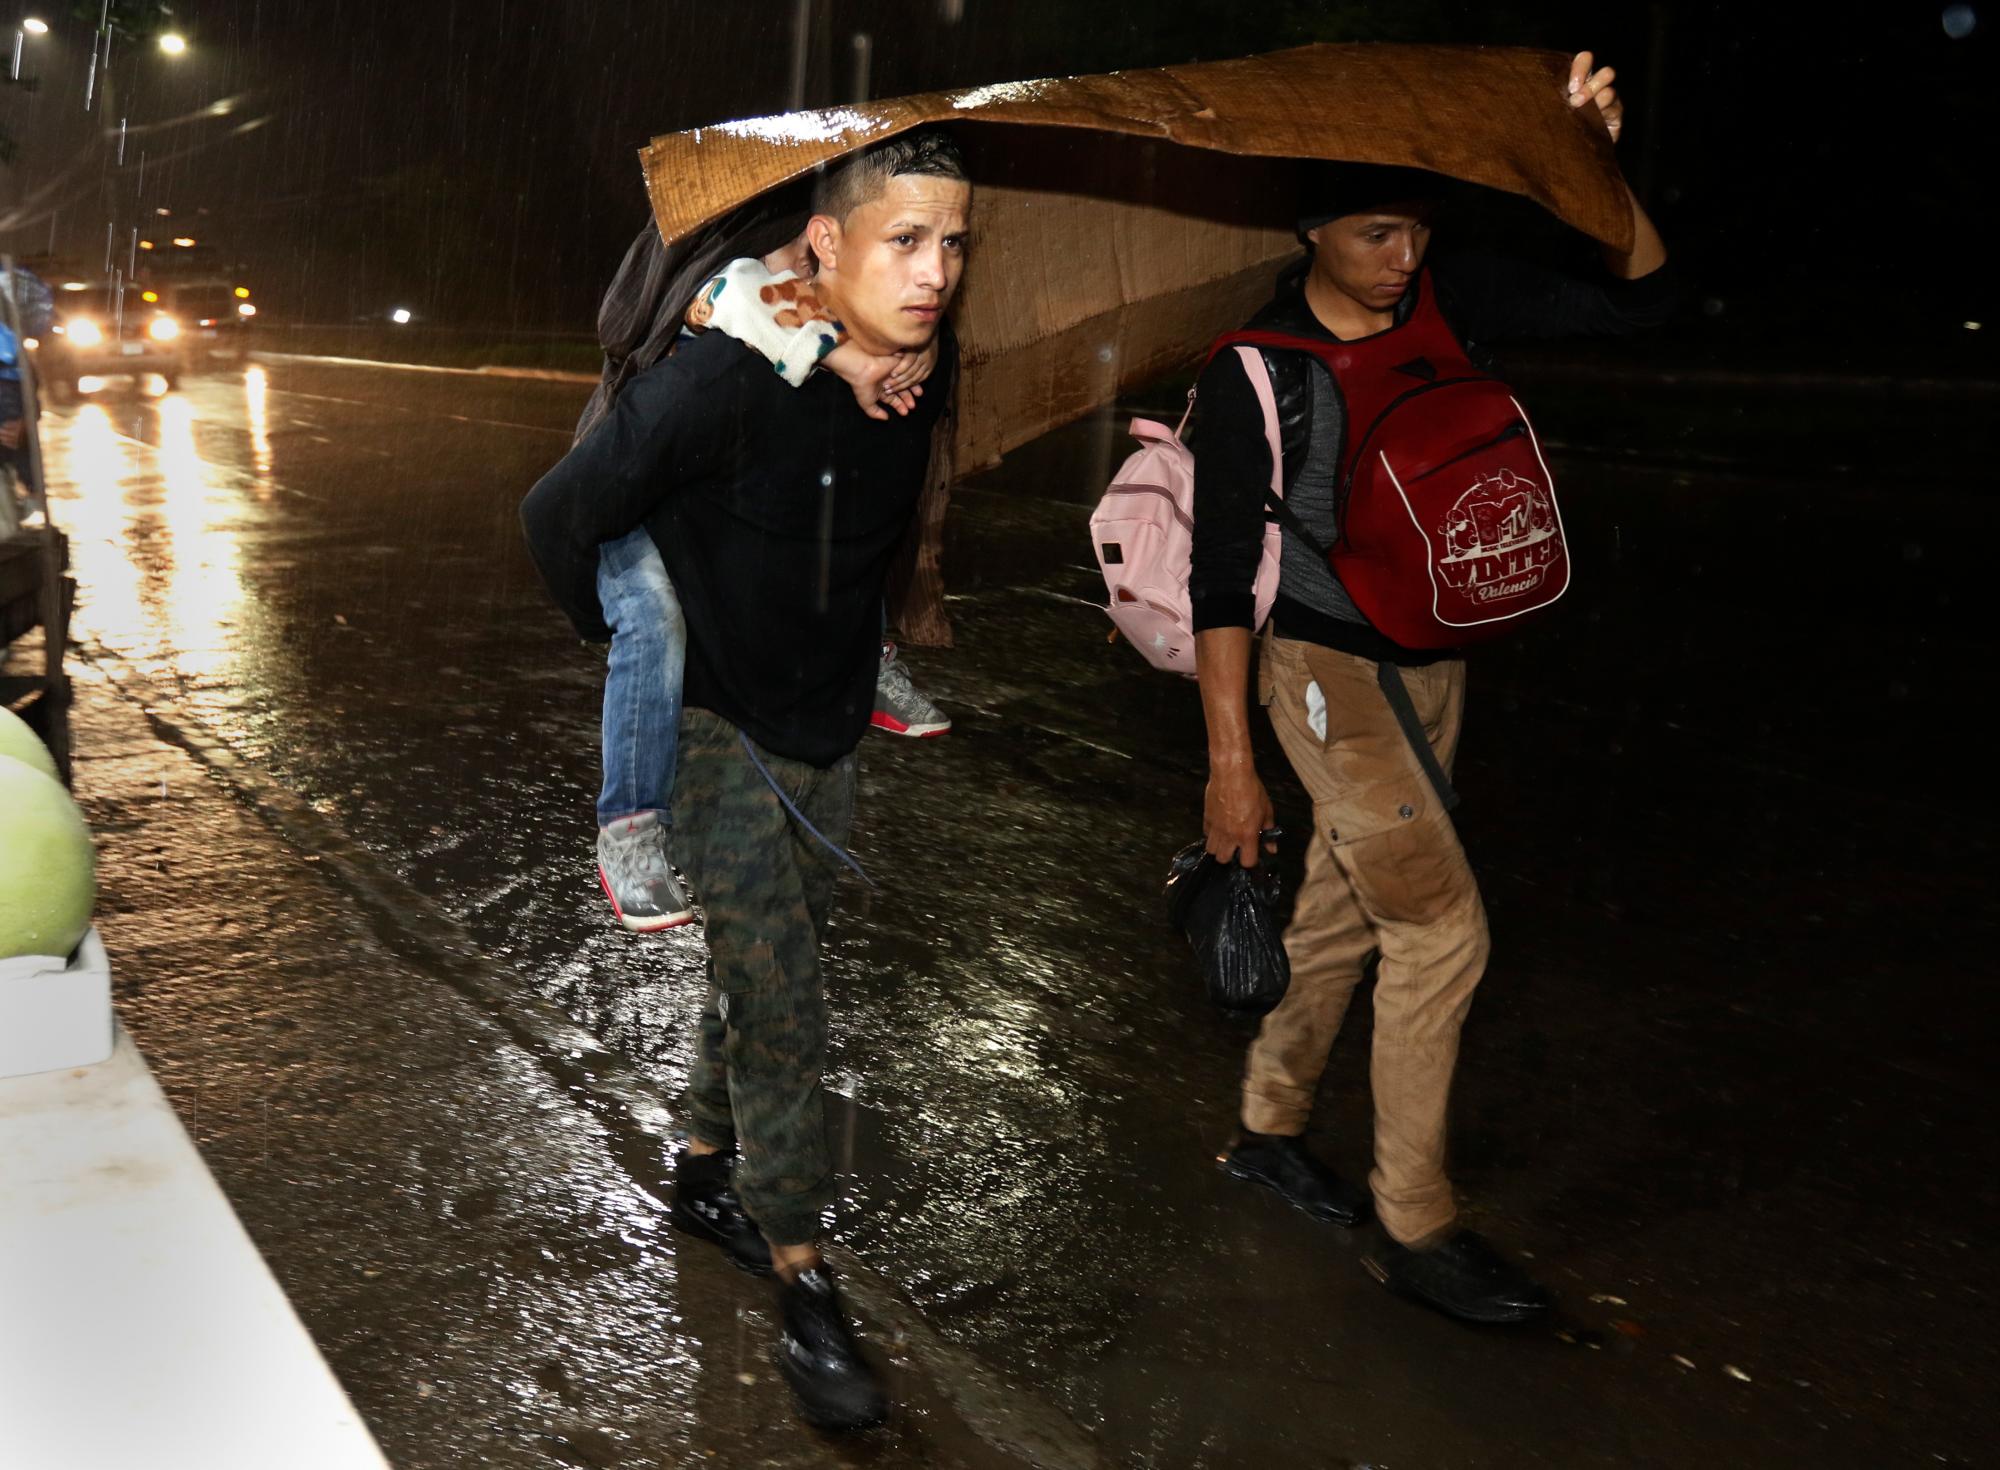 Los migrantes comienzan su viaje hacia los lejanos Estados Unidos,  bajo una lluvia constante mientras una caravana de varios cientos sale a pie desde una estación principal de autobuses en San Pedro Sula, Honduras.